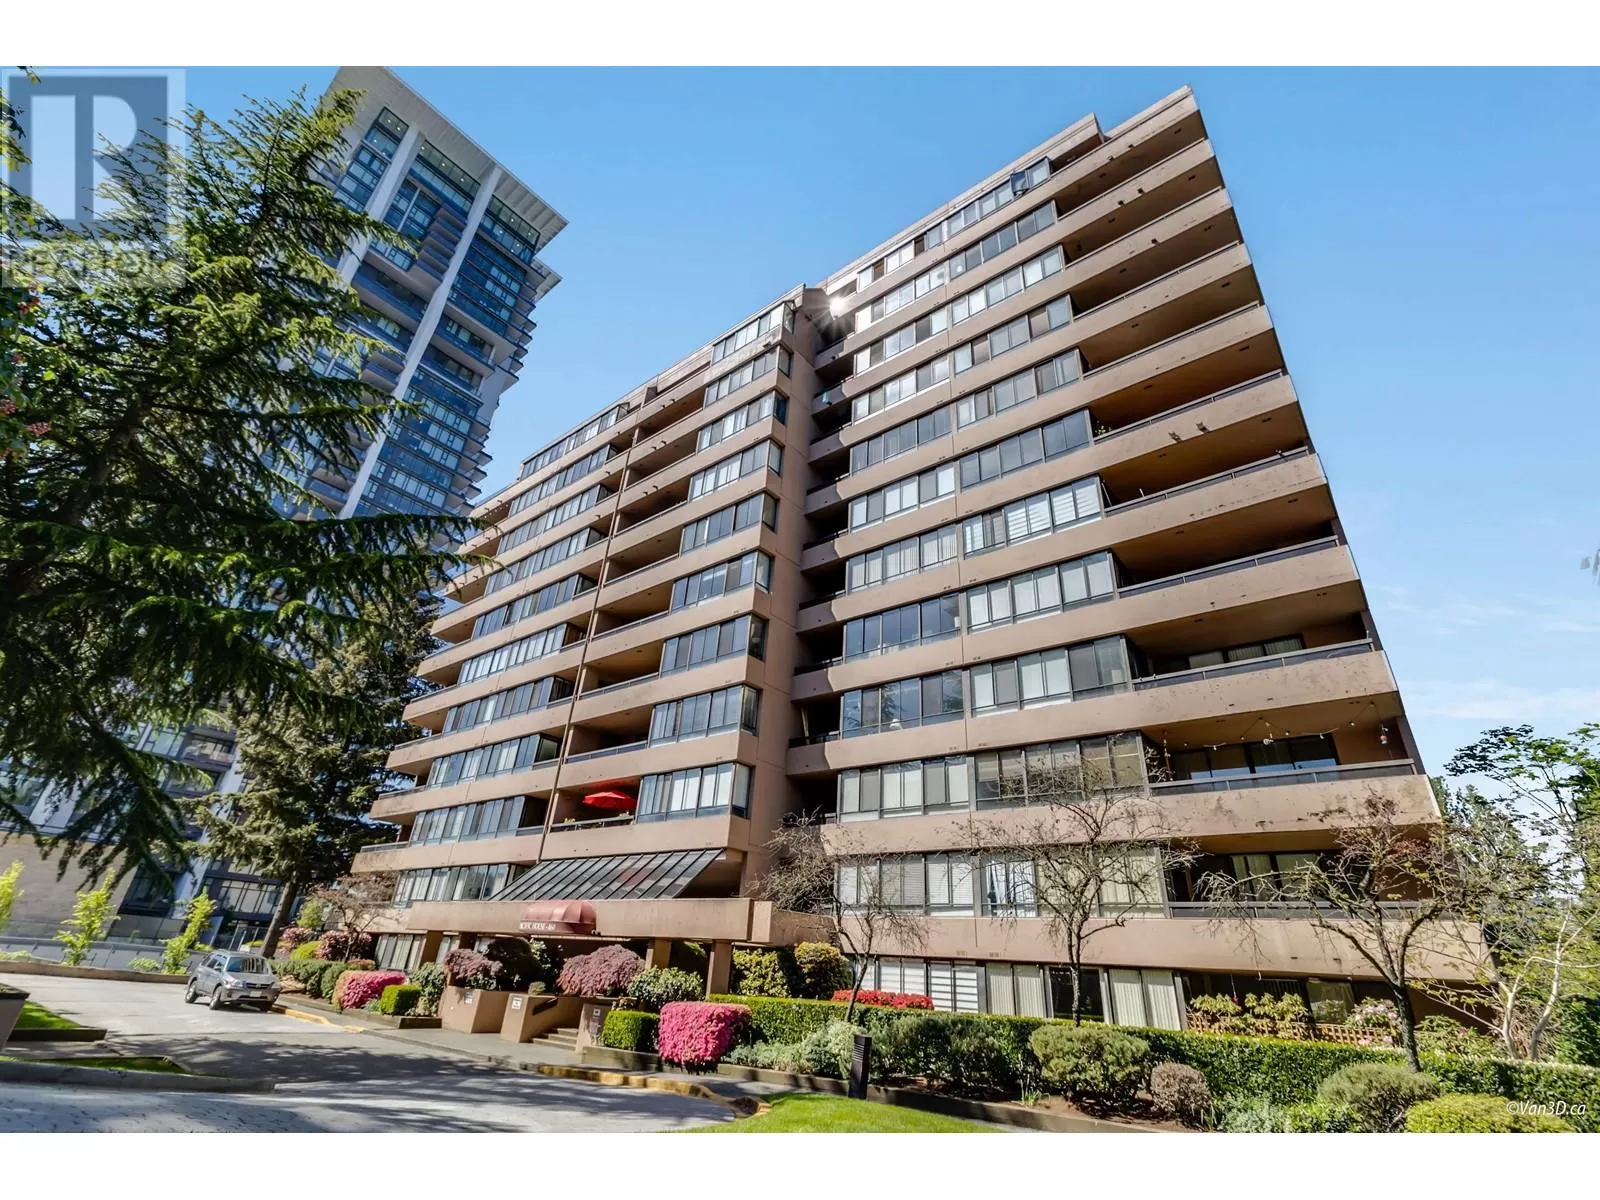 Apartment for rent: 710 460 Westview Street, Coquitlam, British Columbia V3K 6C9